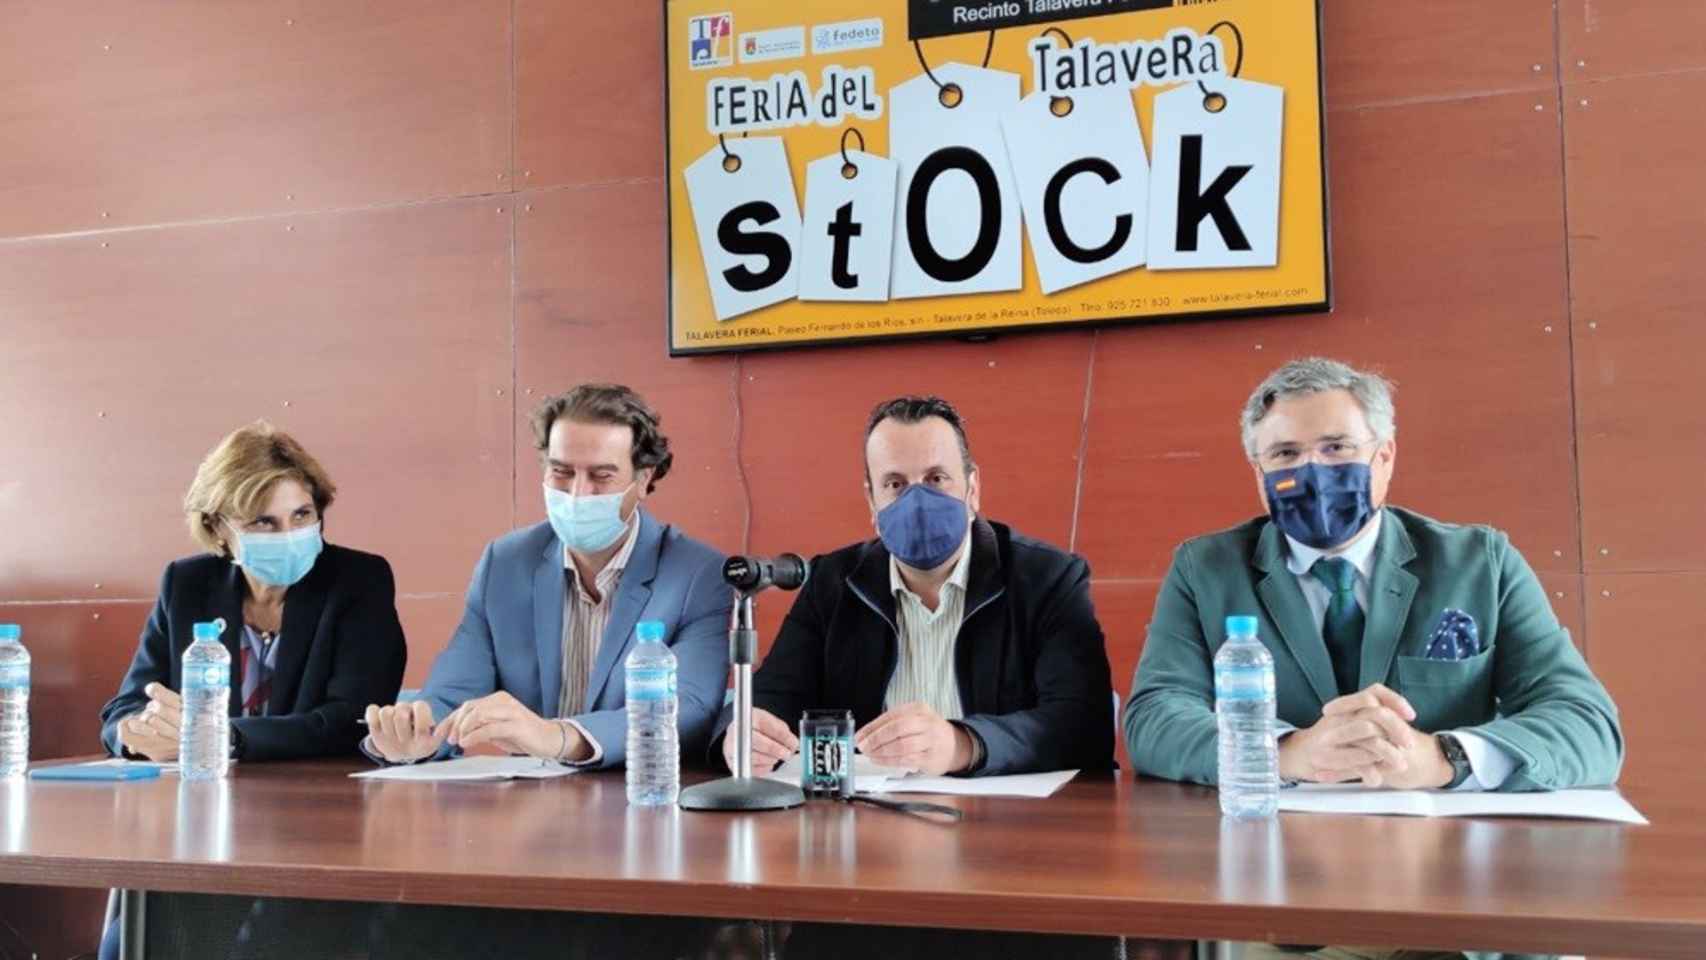 Talavera Ferial recupera su actividad con la Feria del Stock